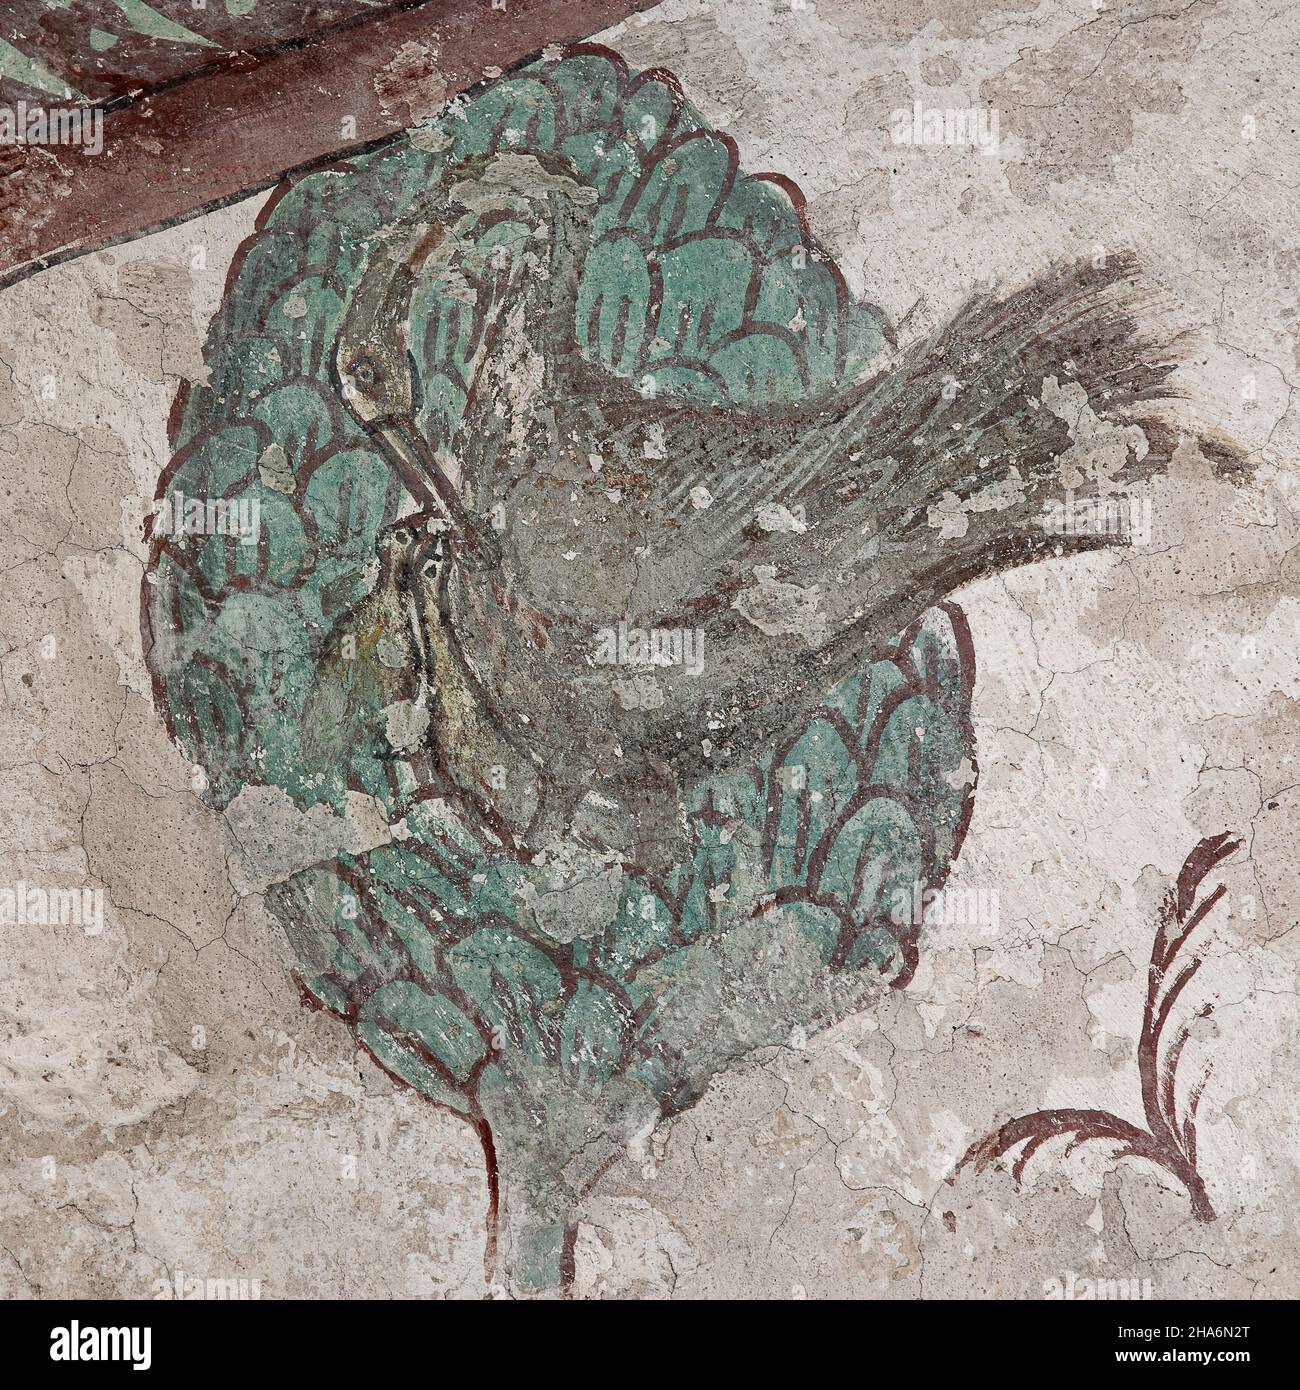 Phoenix nourrissant ses oisillons de son propre sang, une fresque de 1476 dans le curch de Bollerup, Suède, 15 septembre 2021 Banque D'Images